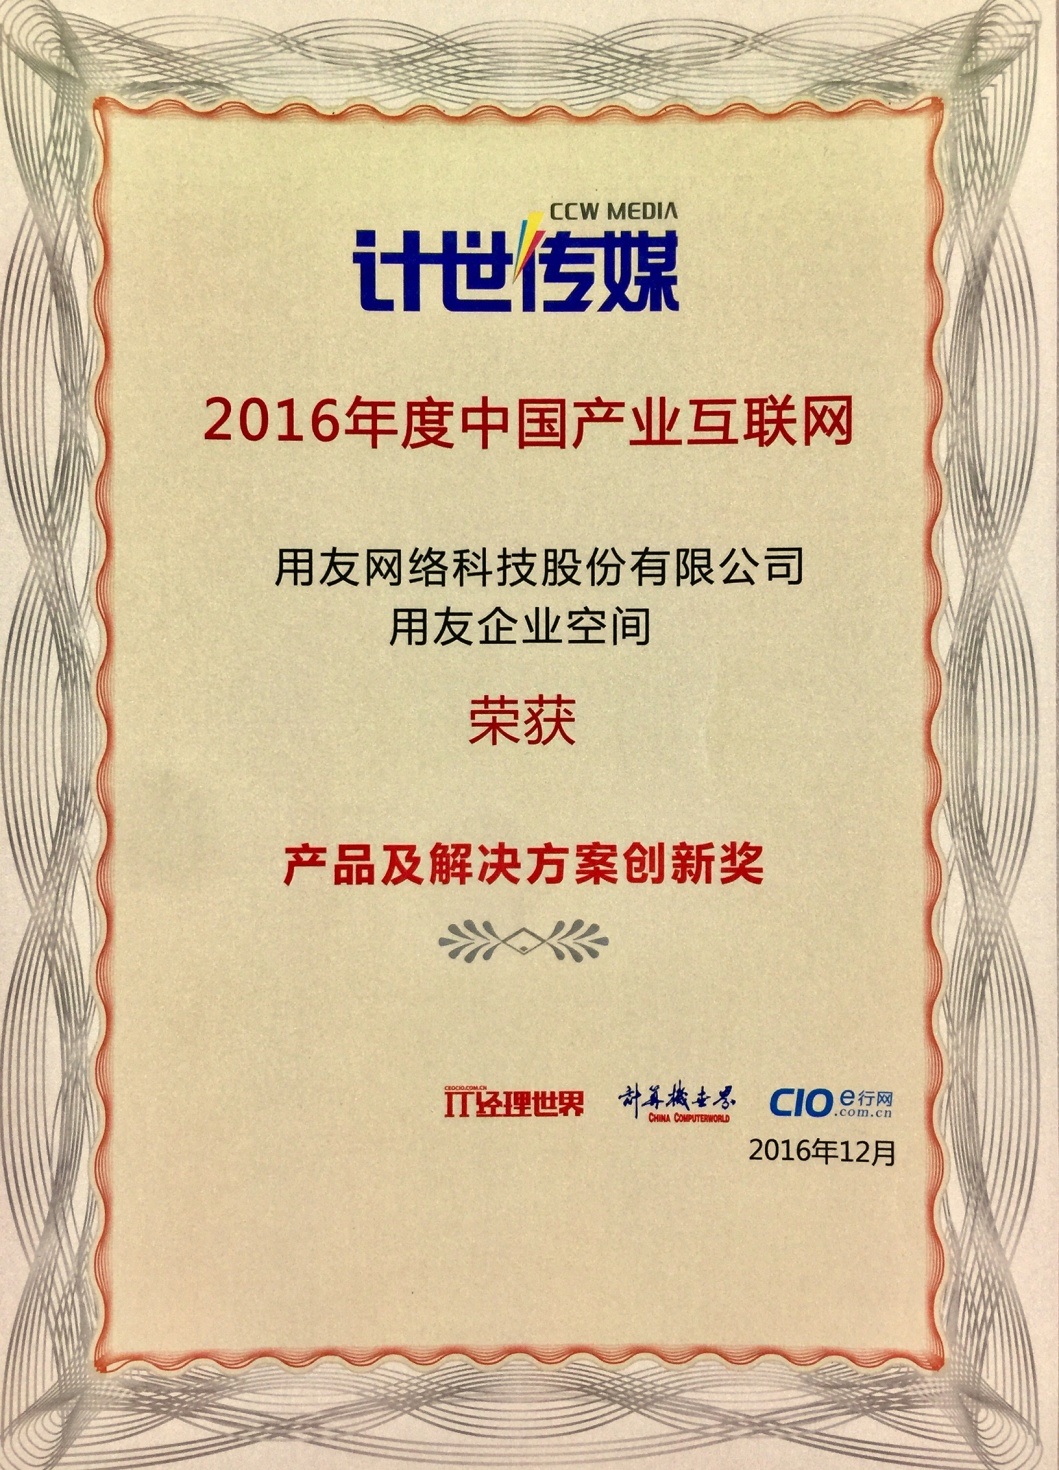 用友企业空间荣获“2016年度中国产业互联网产品及解决方案创新奖”